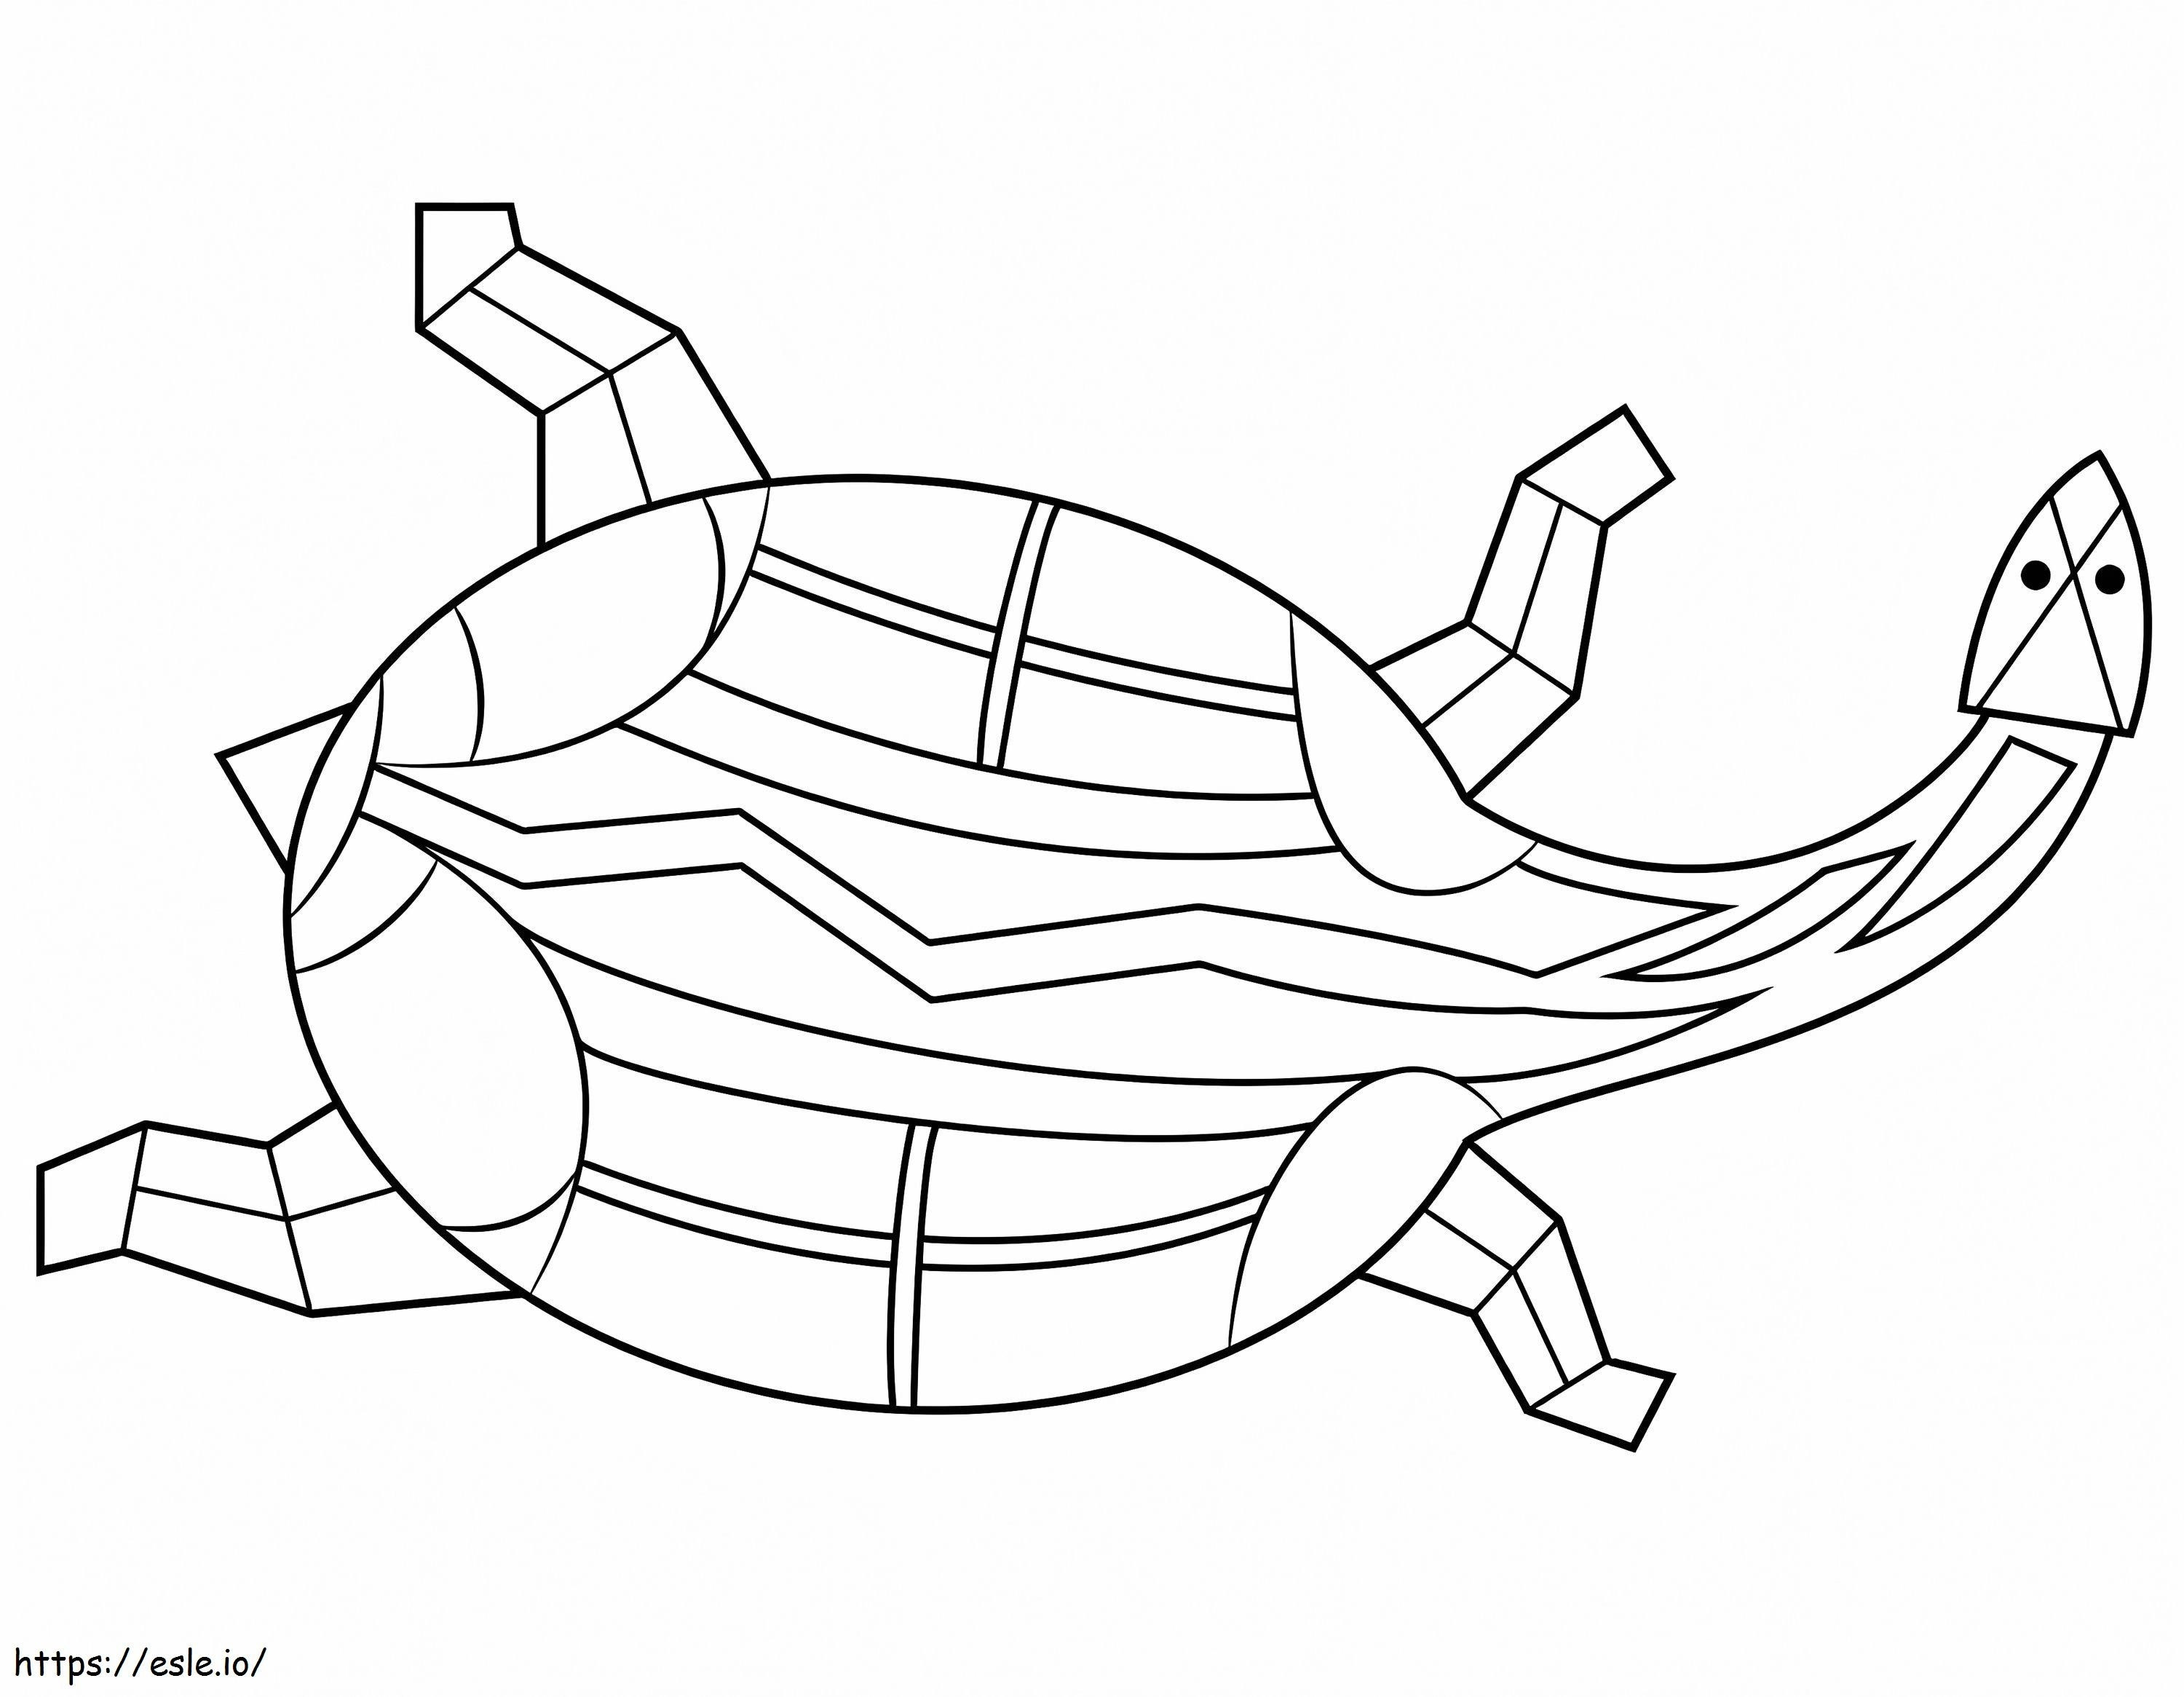 Pictura aborigenă a țestoasei de colorat